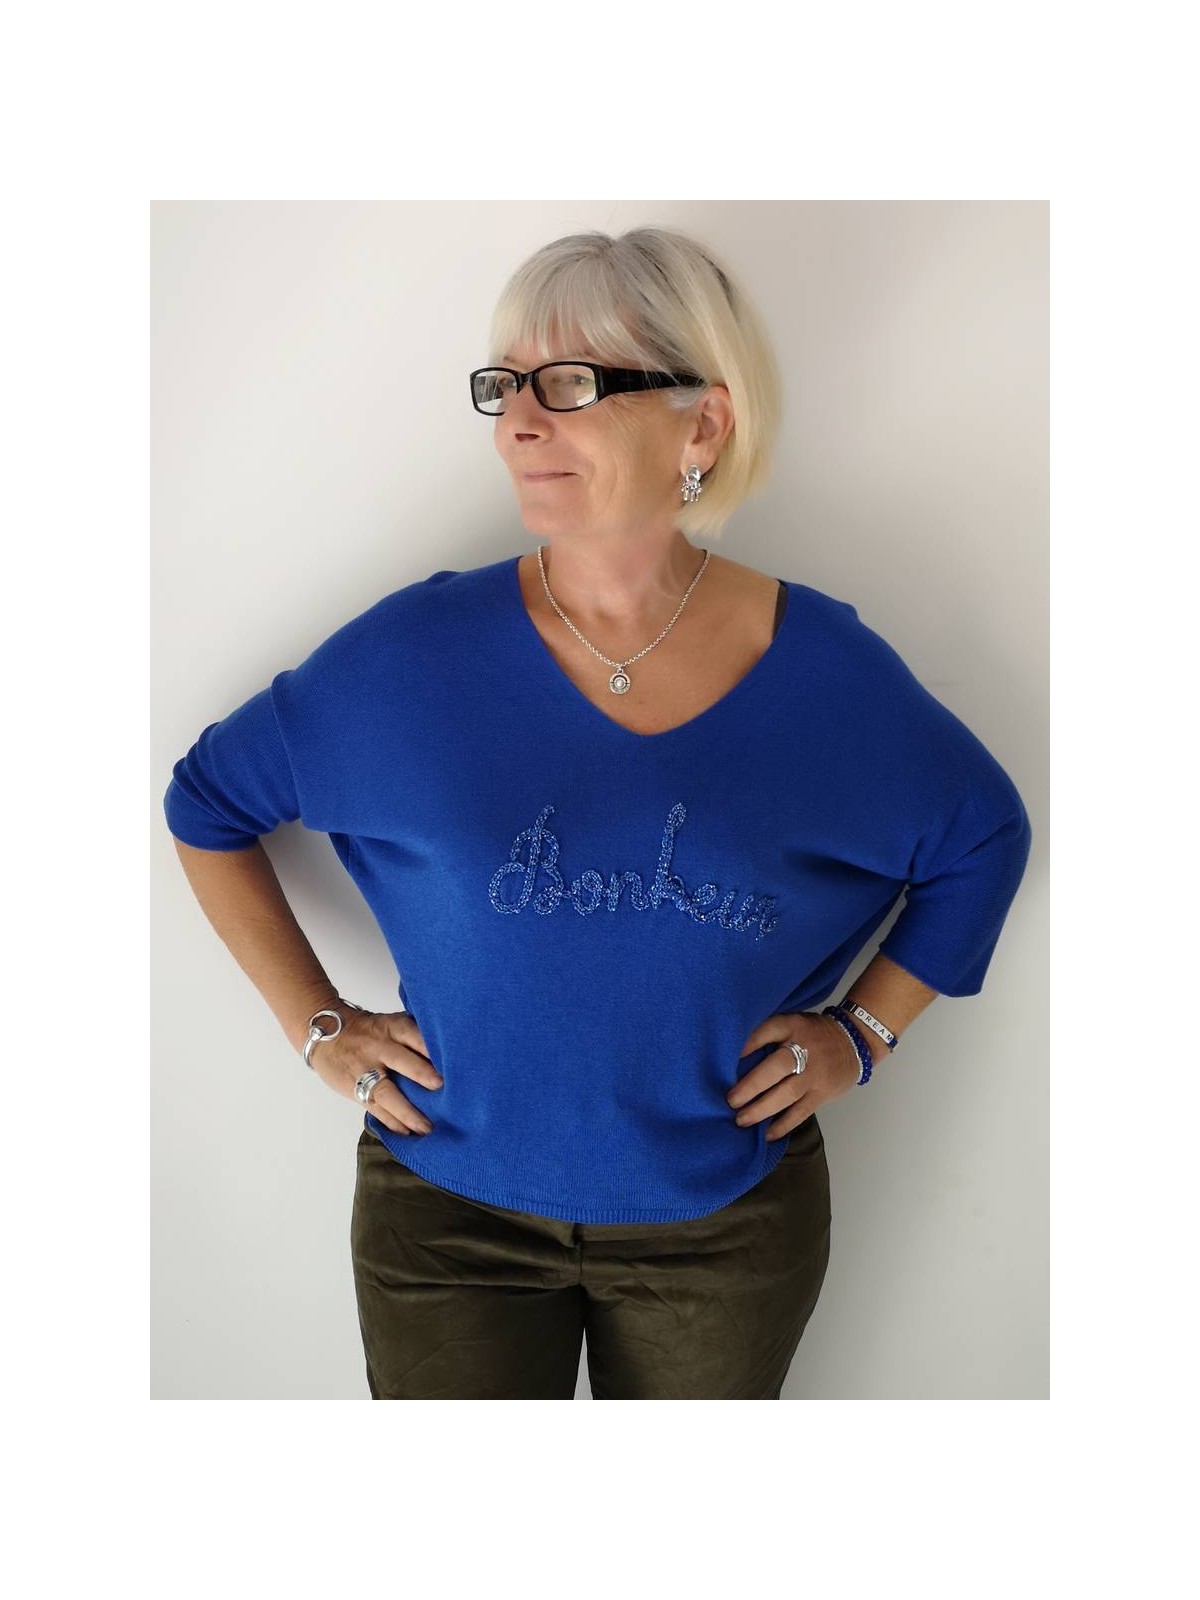 T-shirt manches longues bleu avec écritures bleues | 1 vue porté | Tilleulmenthe mode boutique de vêtements femme en ligne